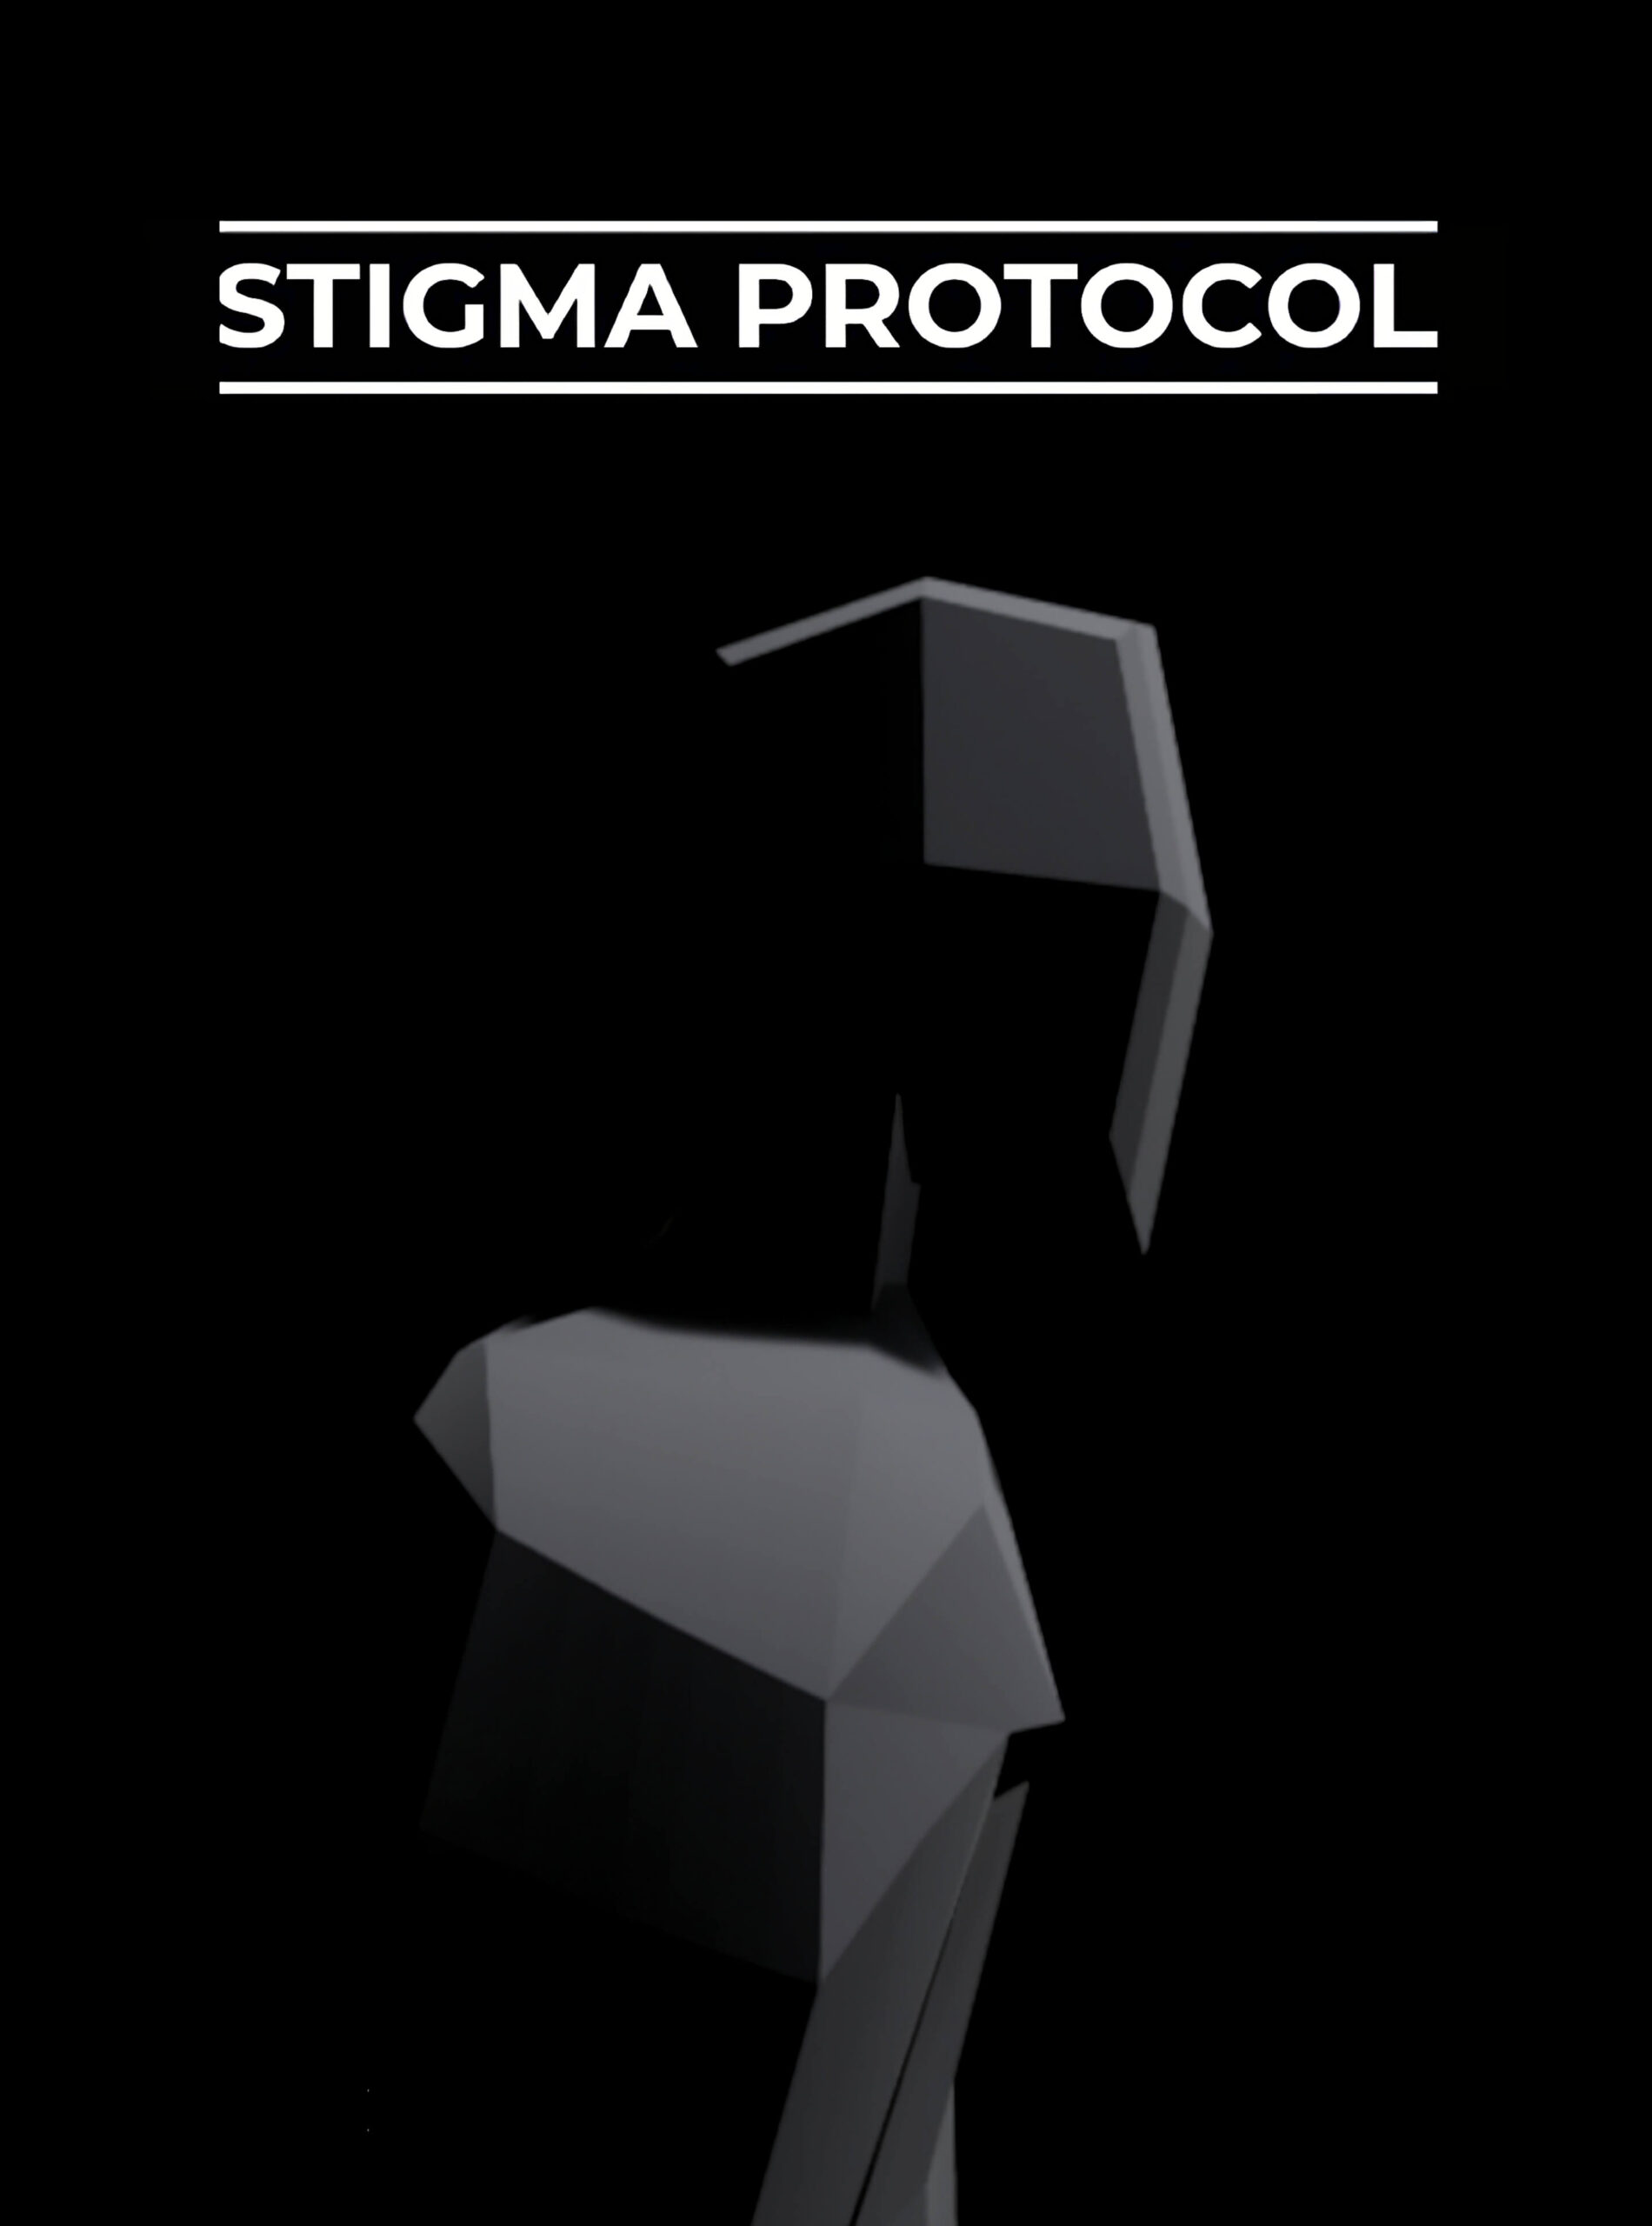 Stigma Protocol